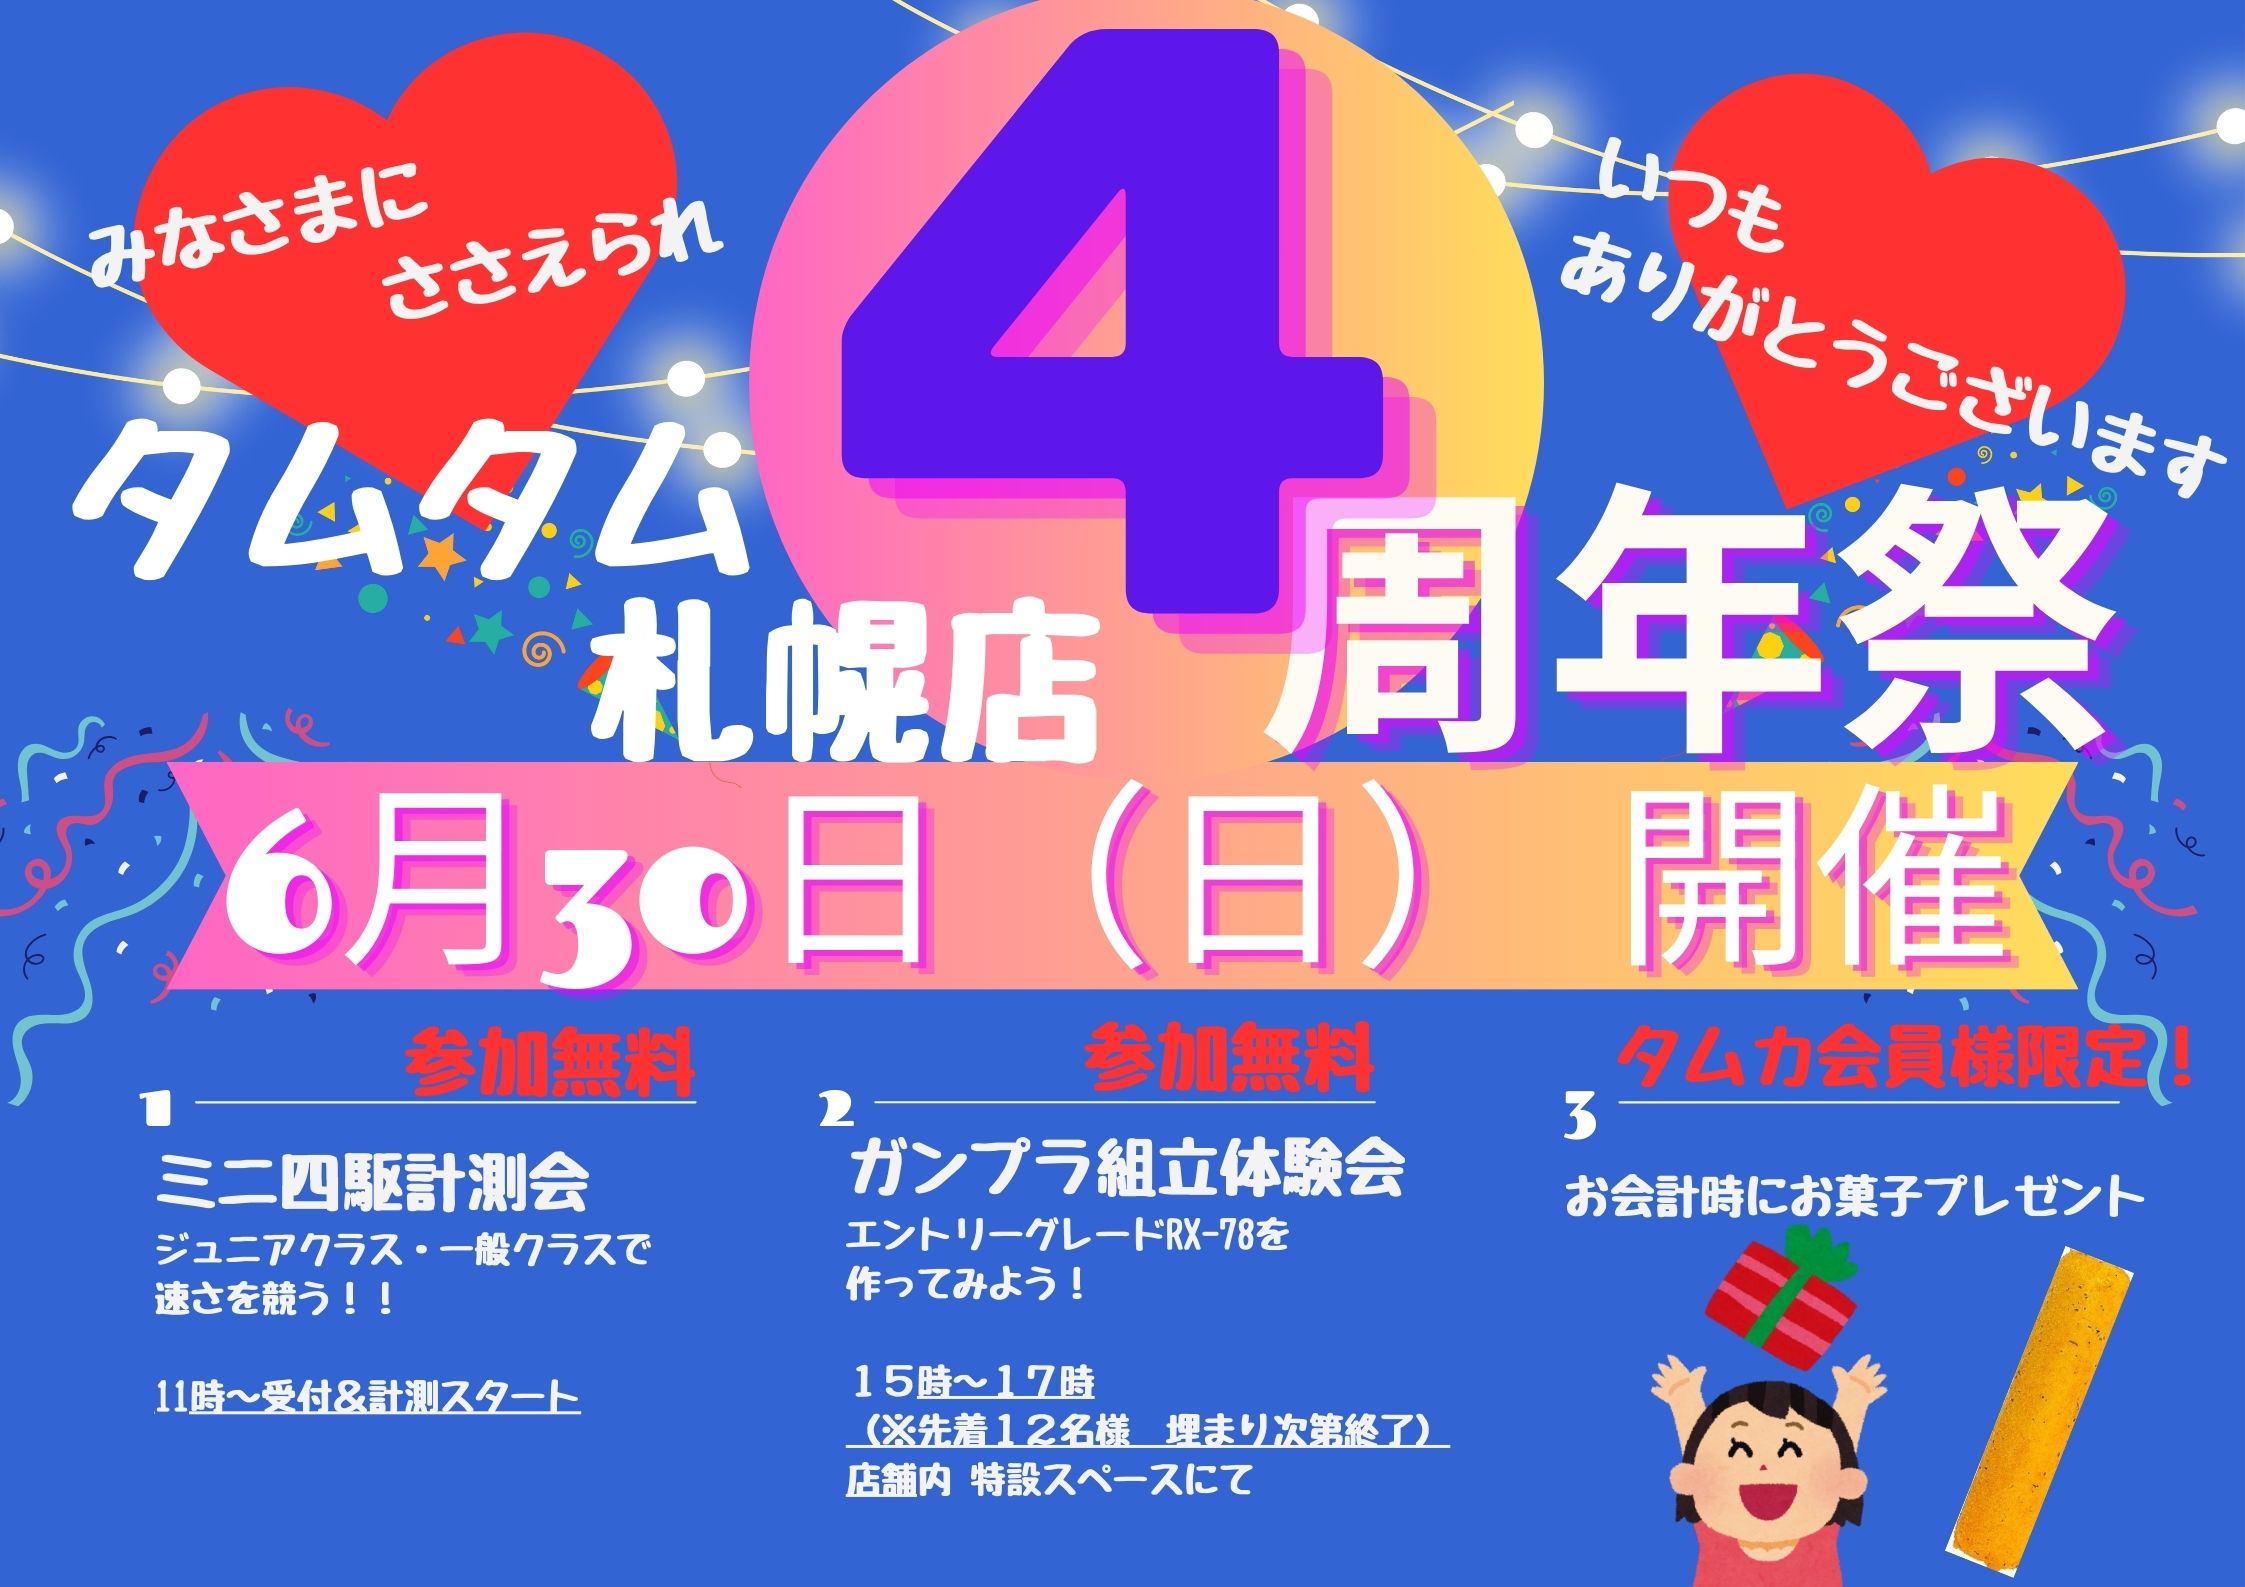 【札幌店】4周年祭開催のお知らせ